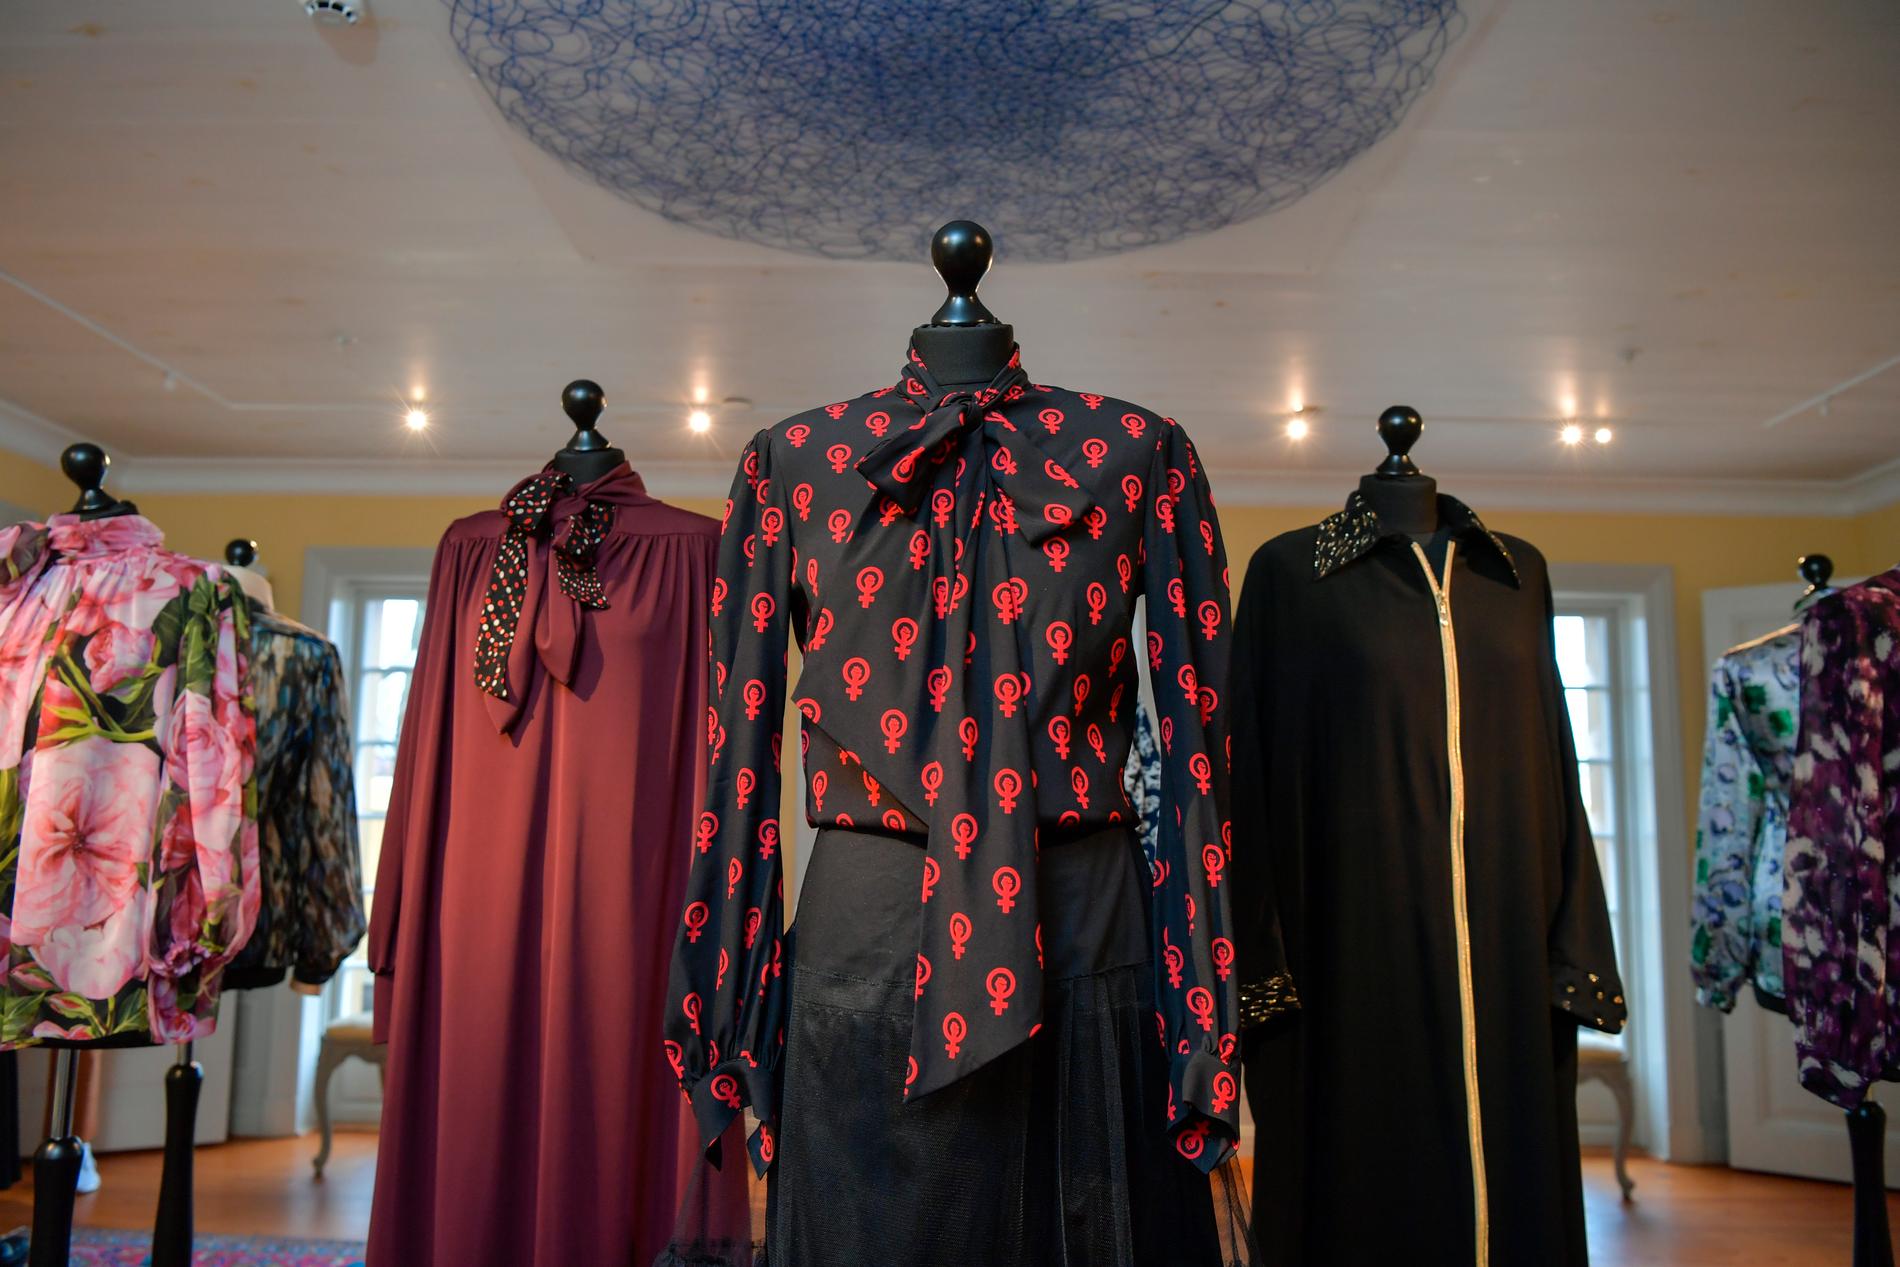 På utställningen "Modet lever vidare" visas klädesplagg som tillhört Sara Danius. Närmast ses hennes ikoniska knytblus, som designades av Camilla Thulin.